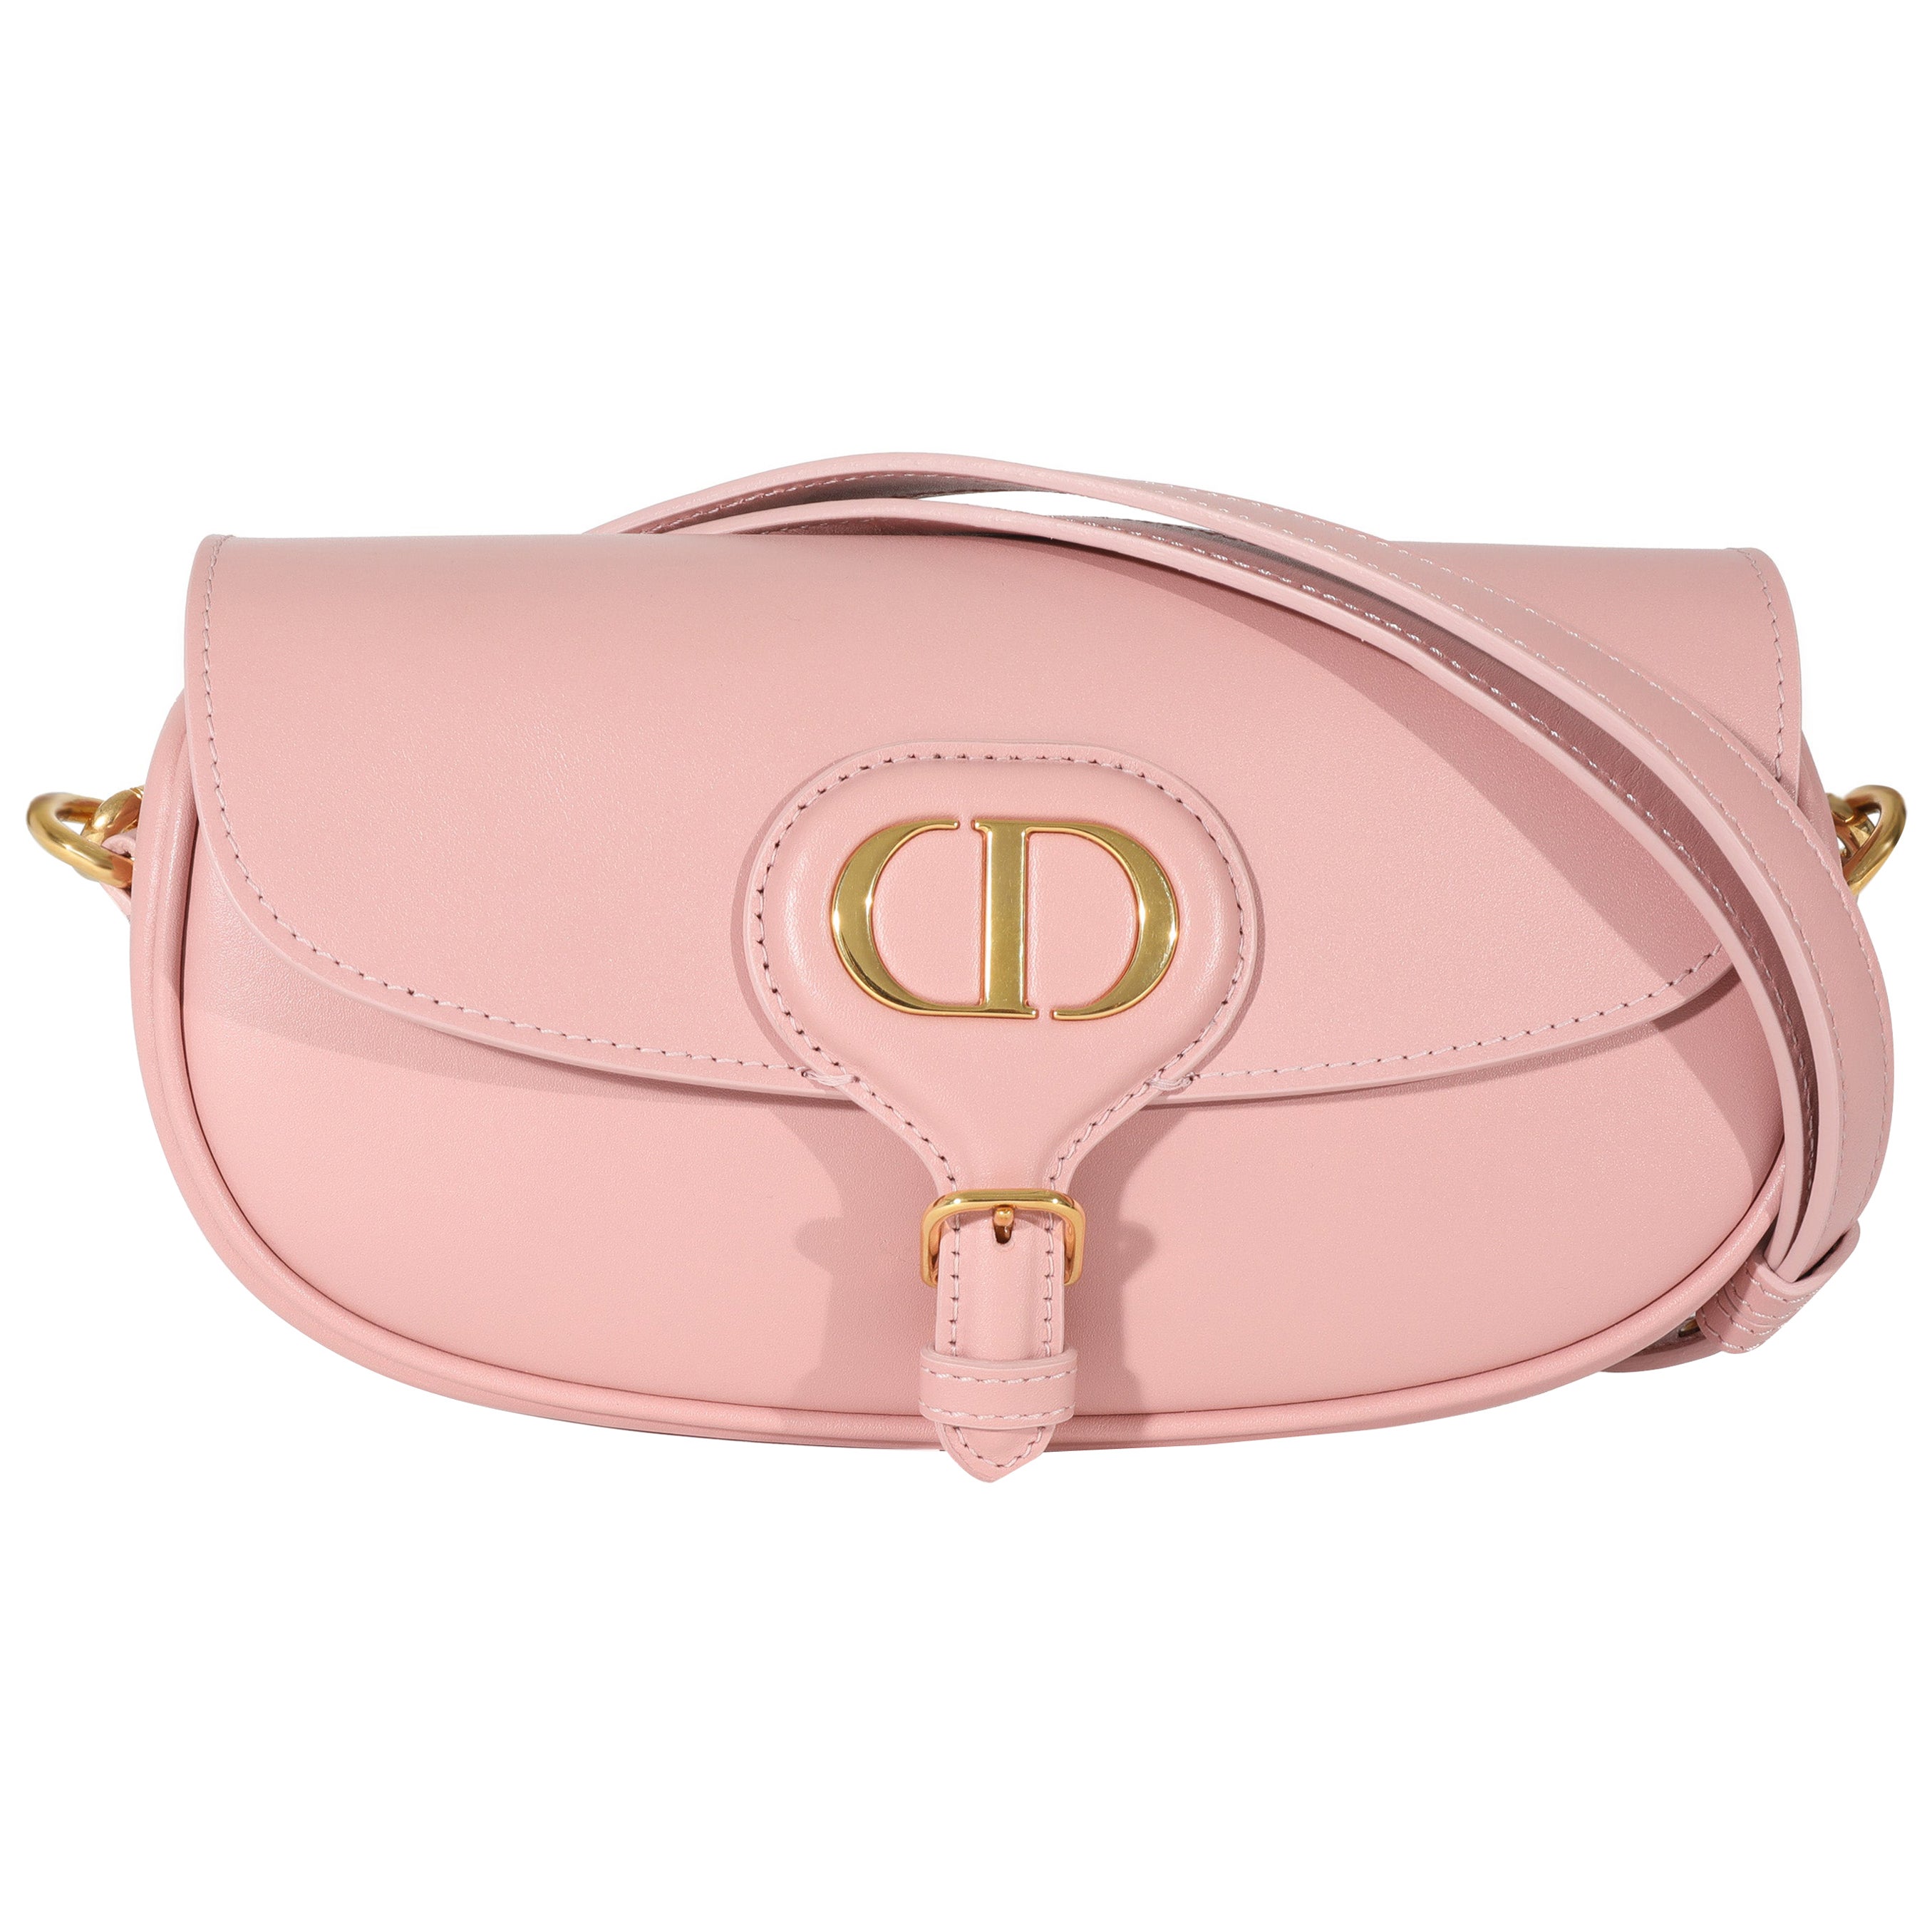 How to Spot a Fake Lady Dior Handbag Review My Christian Dior Bag 